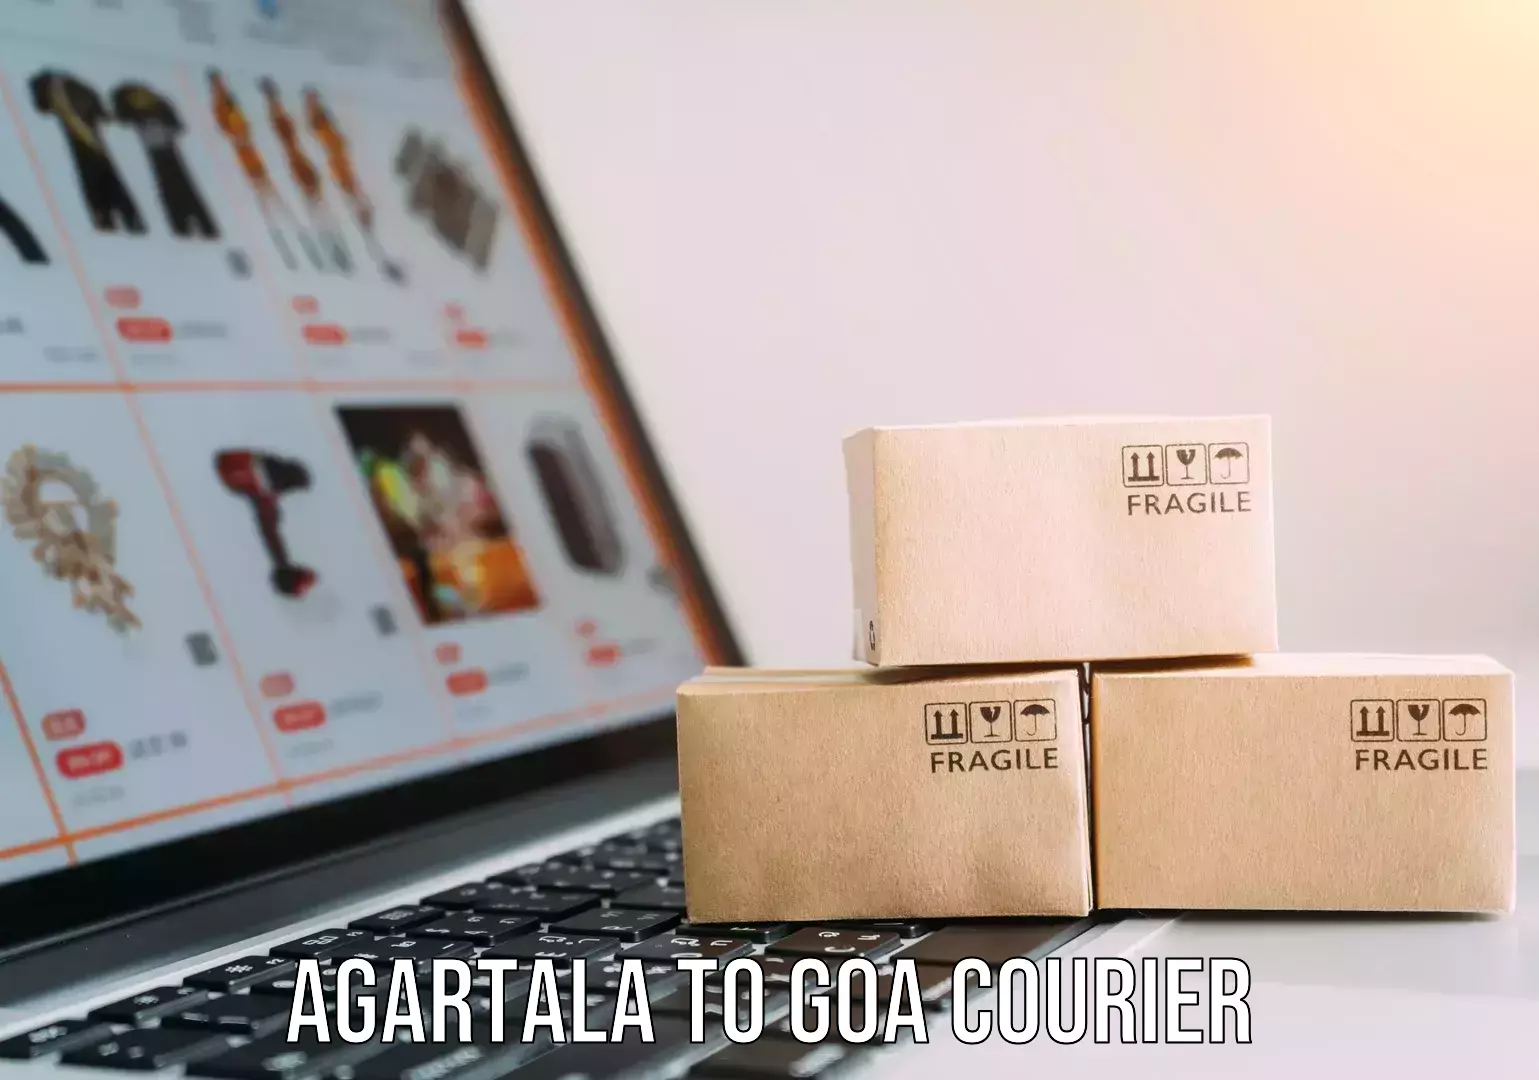 Courier app Agartala to Goa